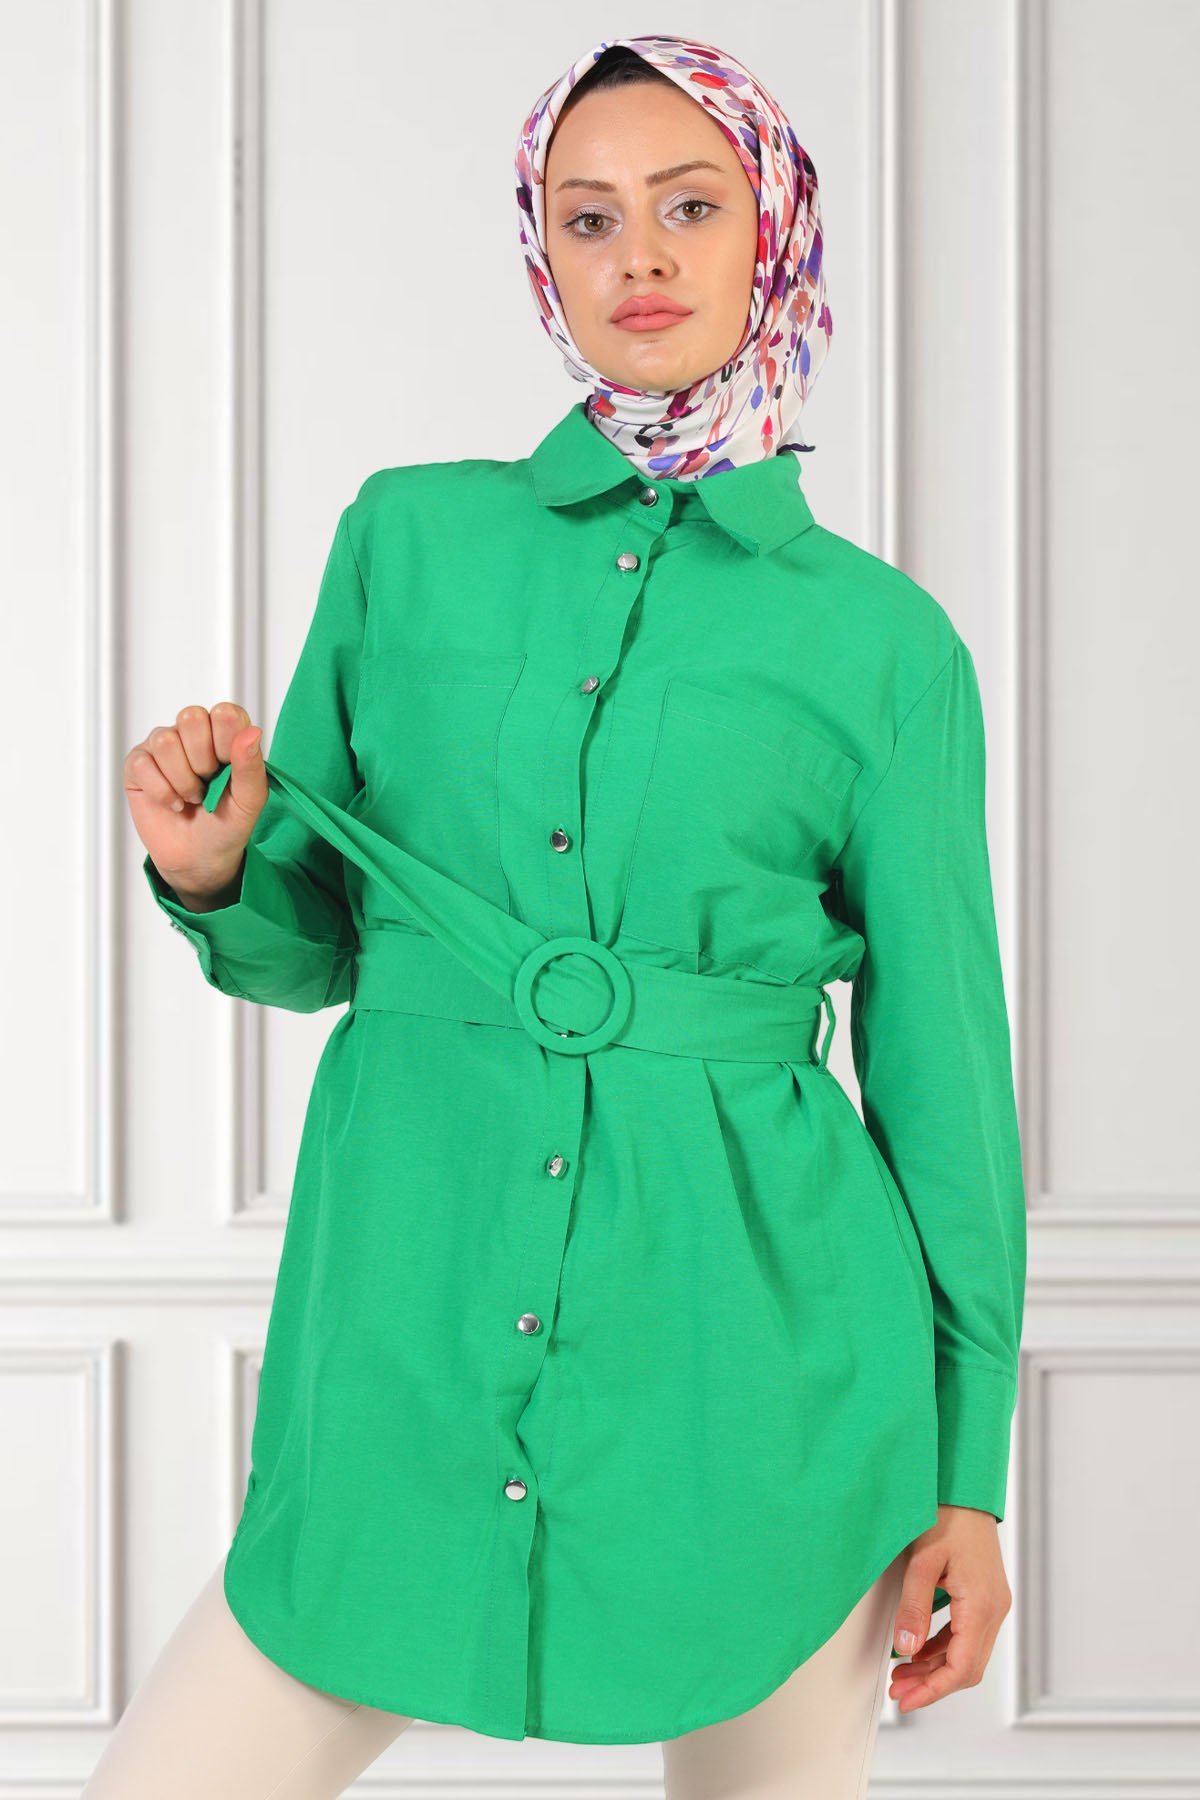 Kadın Çift Cepli Kemerli Gömlek Tunik Yeşil 494924 - tozlu.com